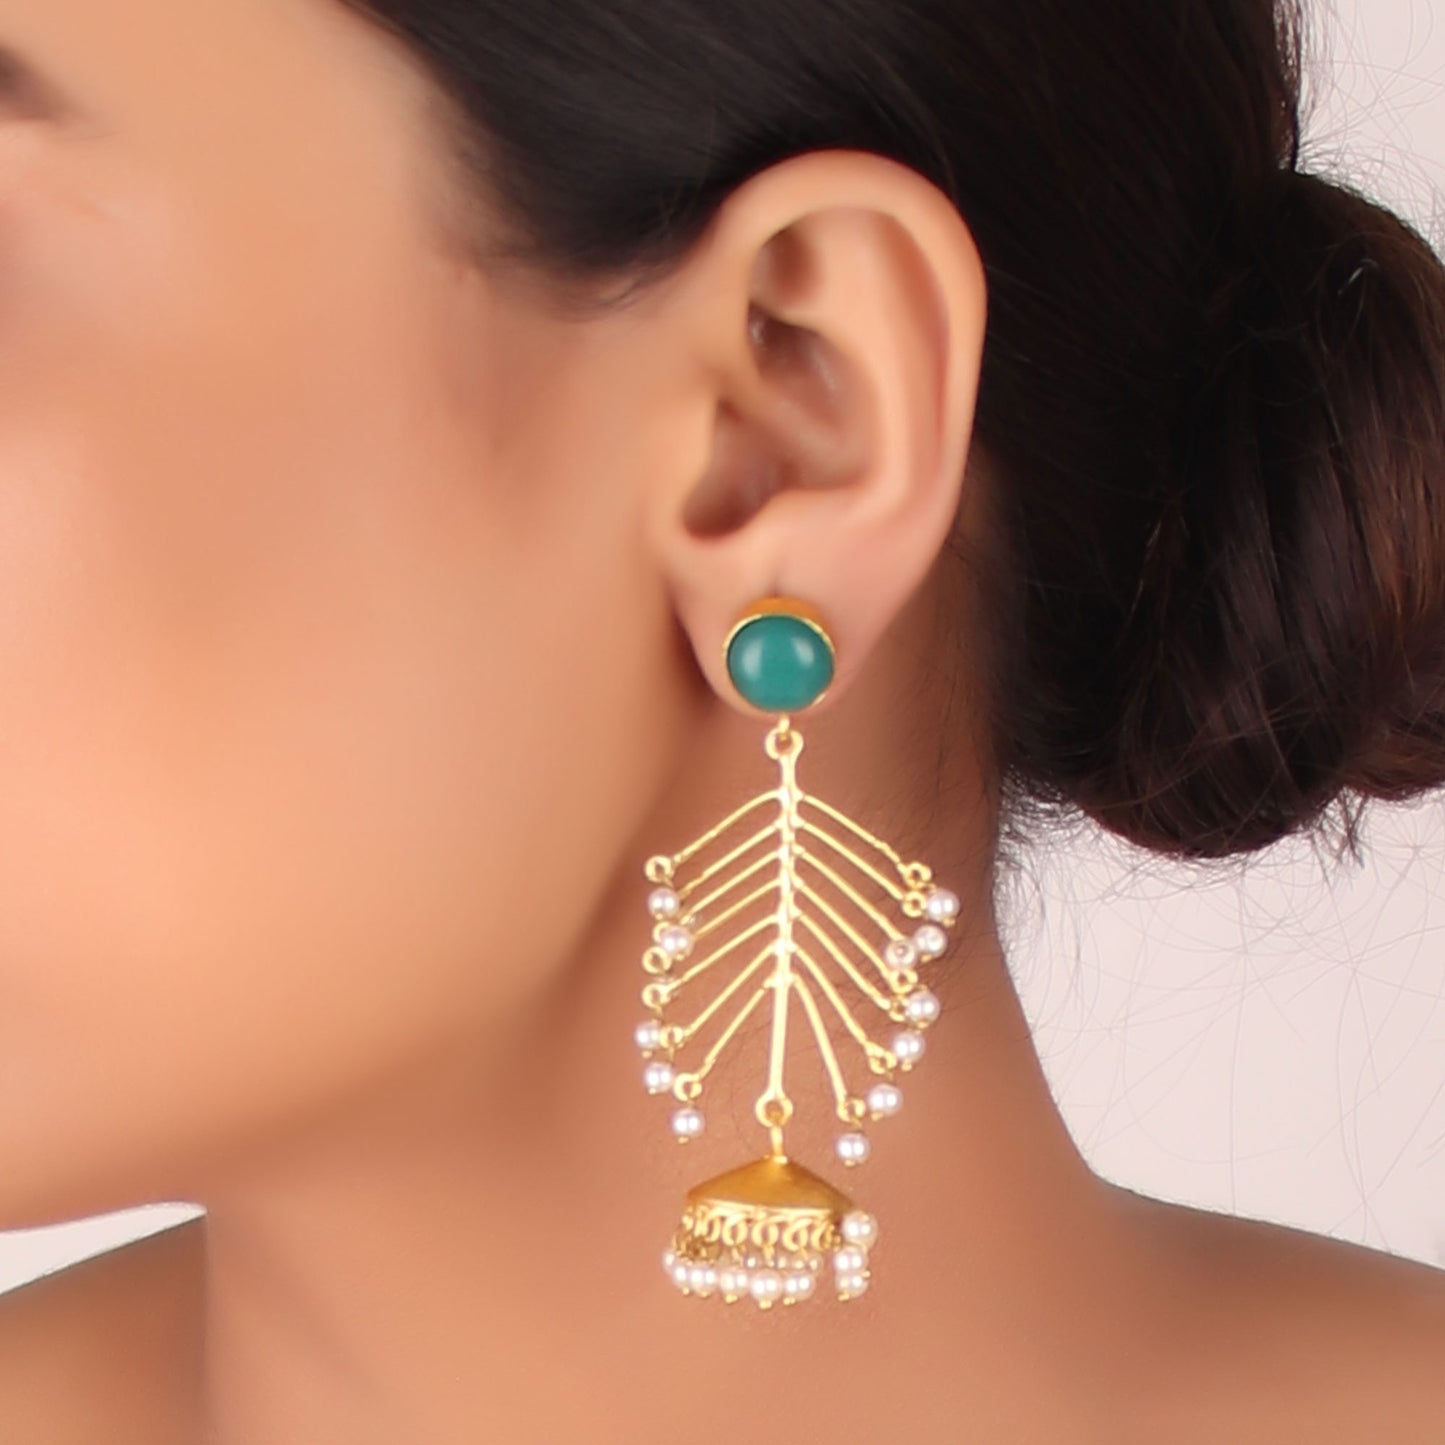 Earrings,The Elite Golden Fern Earrings with Green Stone - Cippele Multi Store